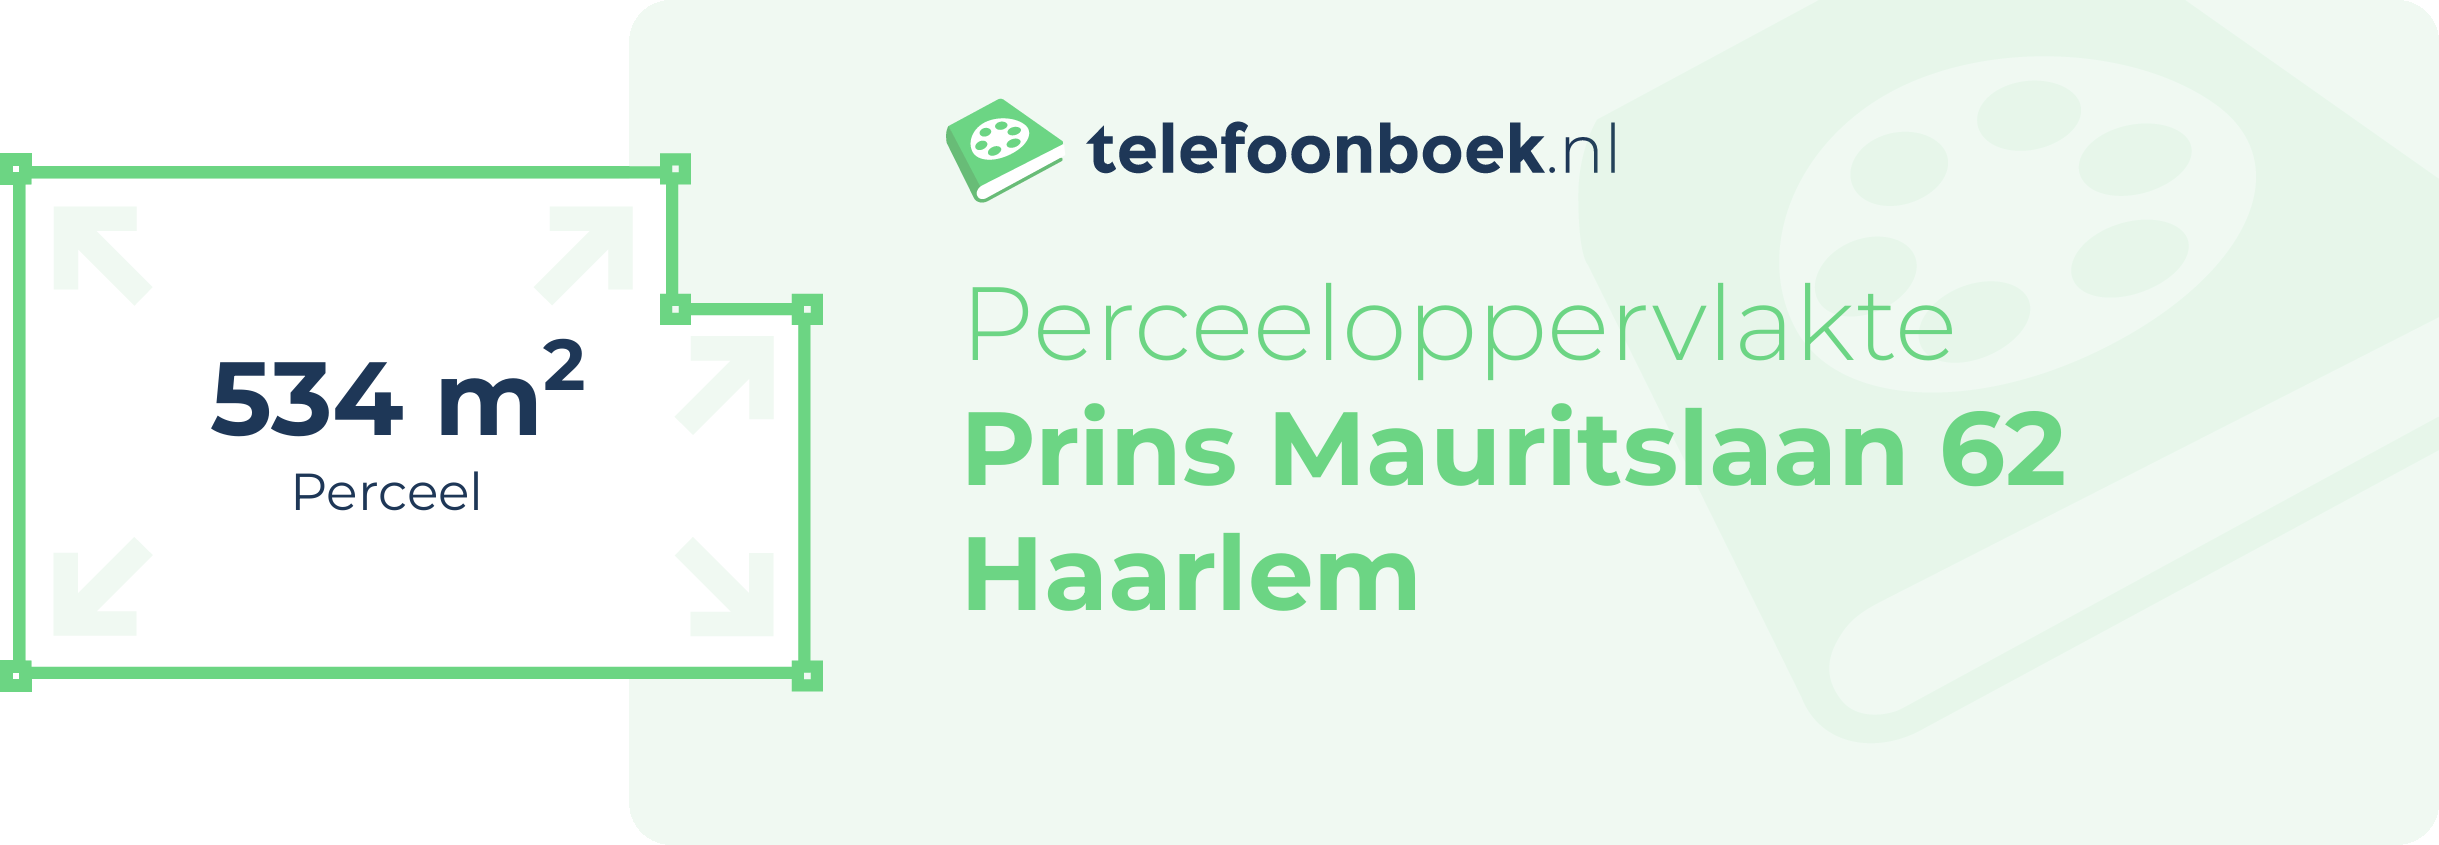 Perceeloppervlakte Prins Mauritslaan 62 Haarlem